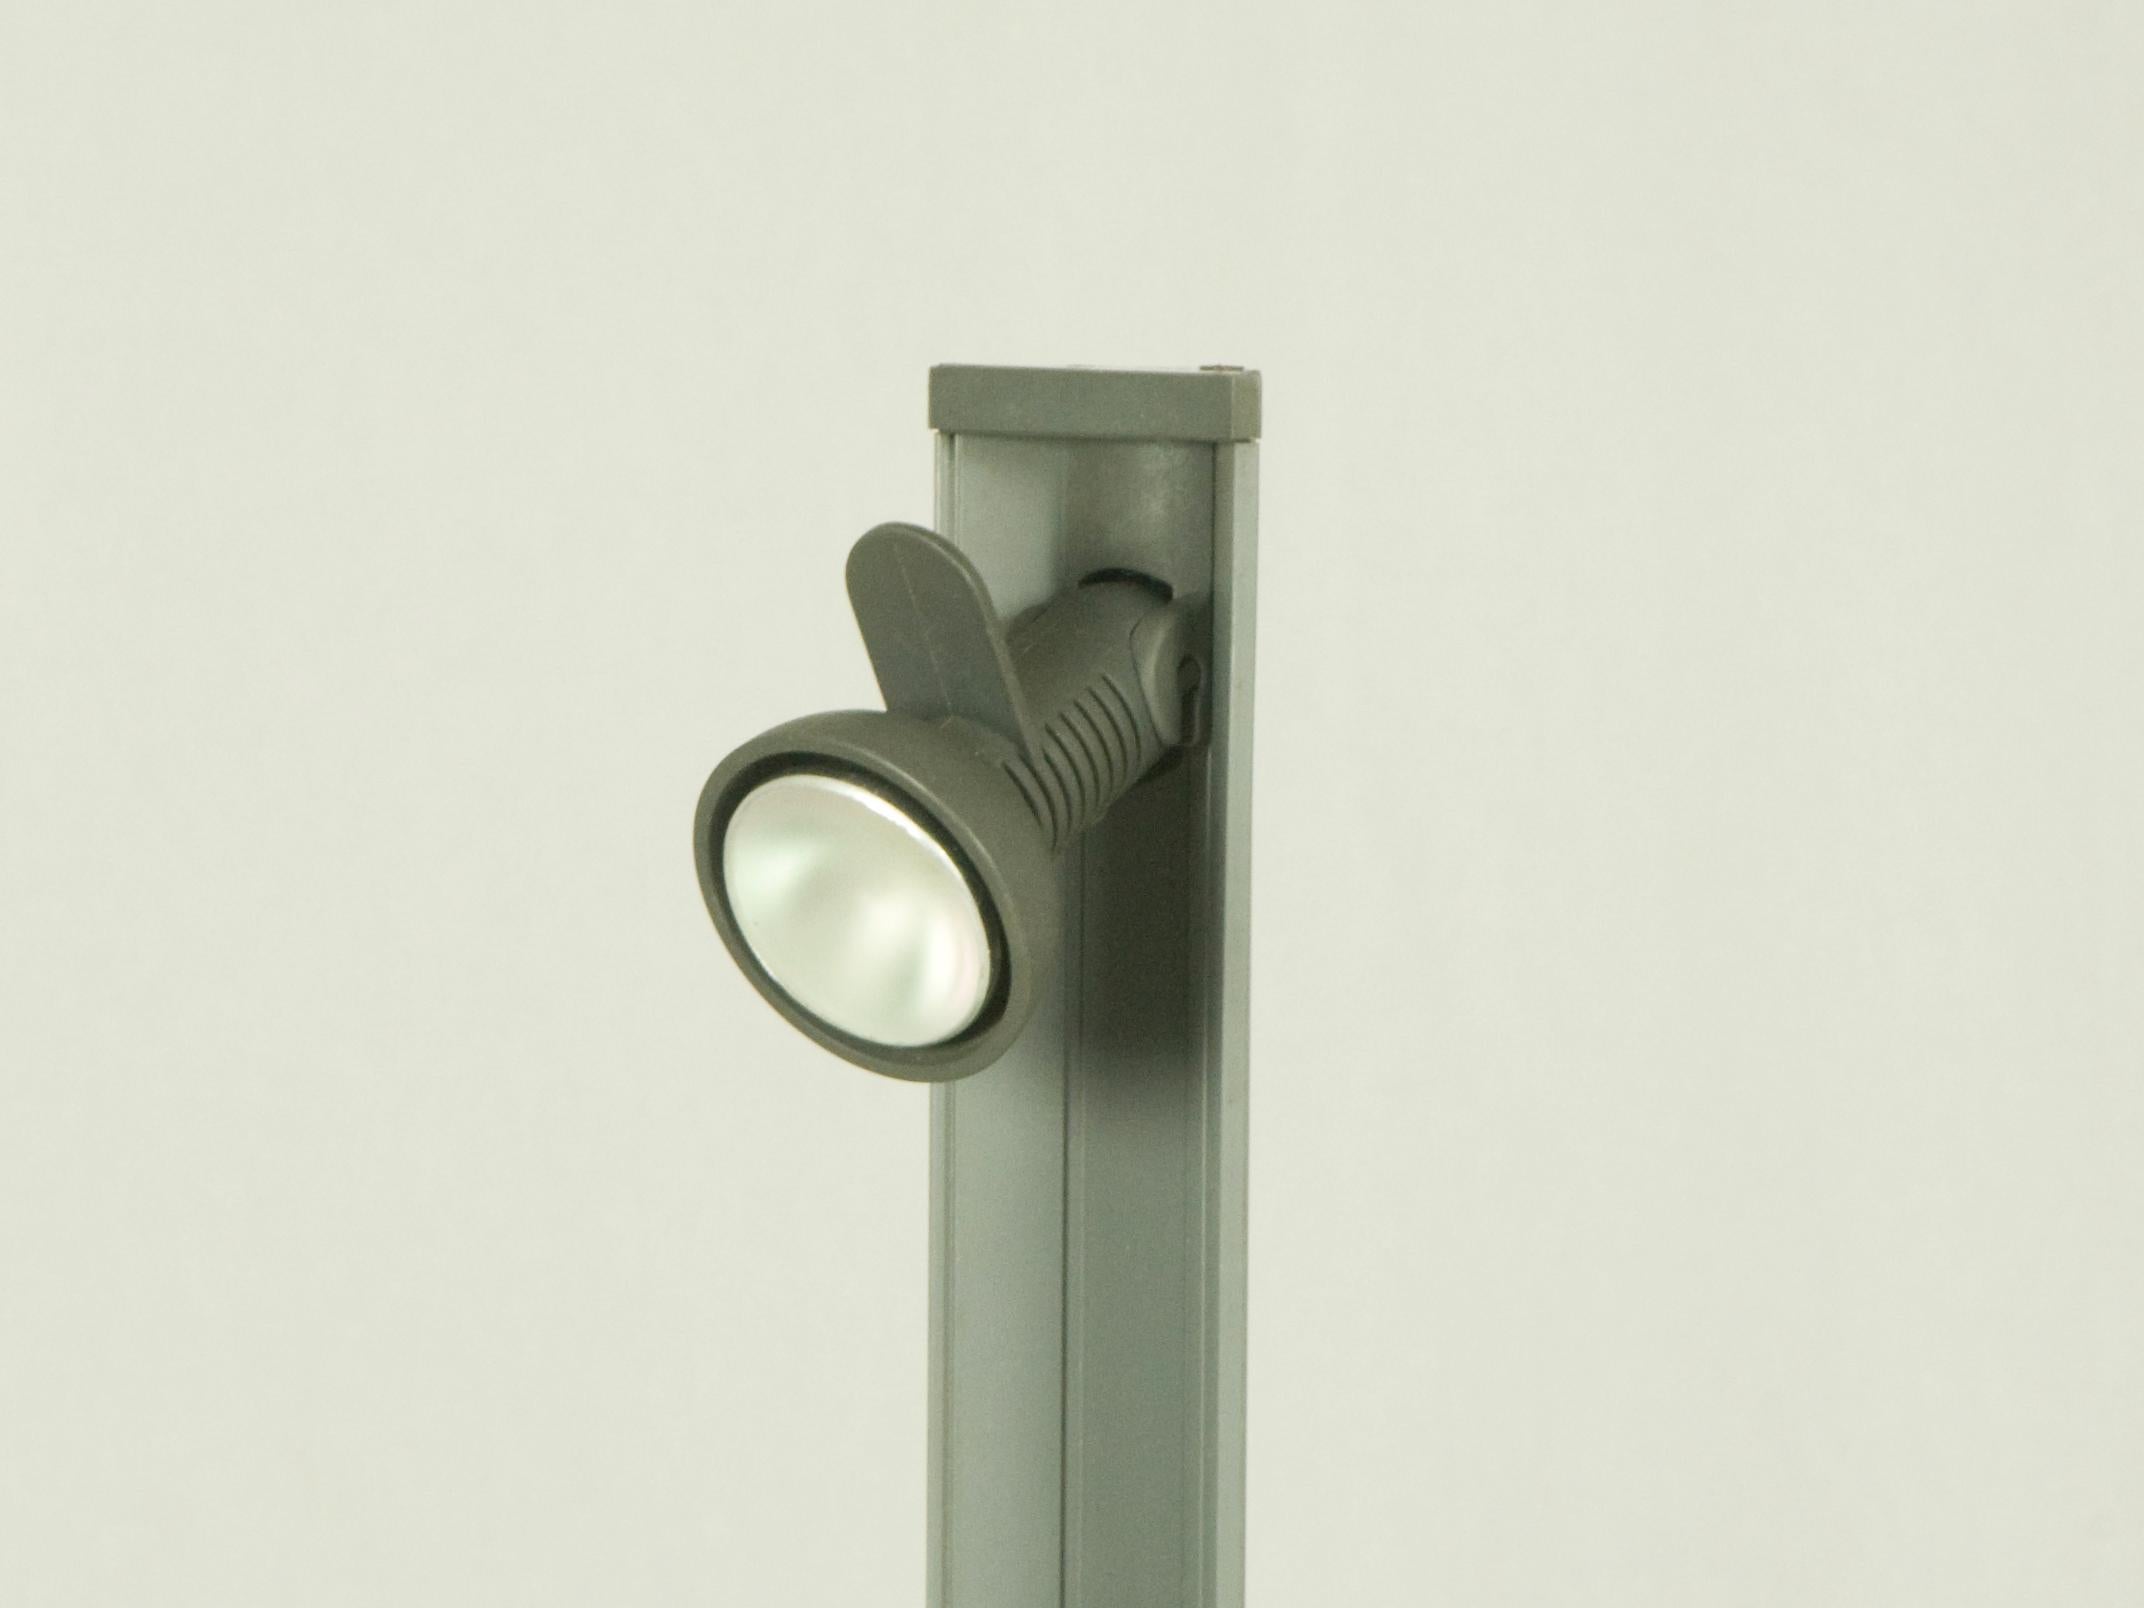 Diese Kunststofflampe lässt sich durch Berühren der dreieckigen Abdeckung an der Oberseite der Lampe ein- und ausschalten. Es bleibt in gutem Zustand: leichte Abnutzung durch den Gebrauch.